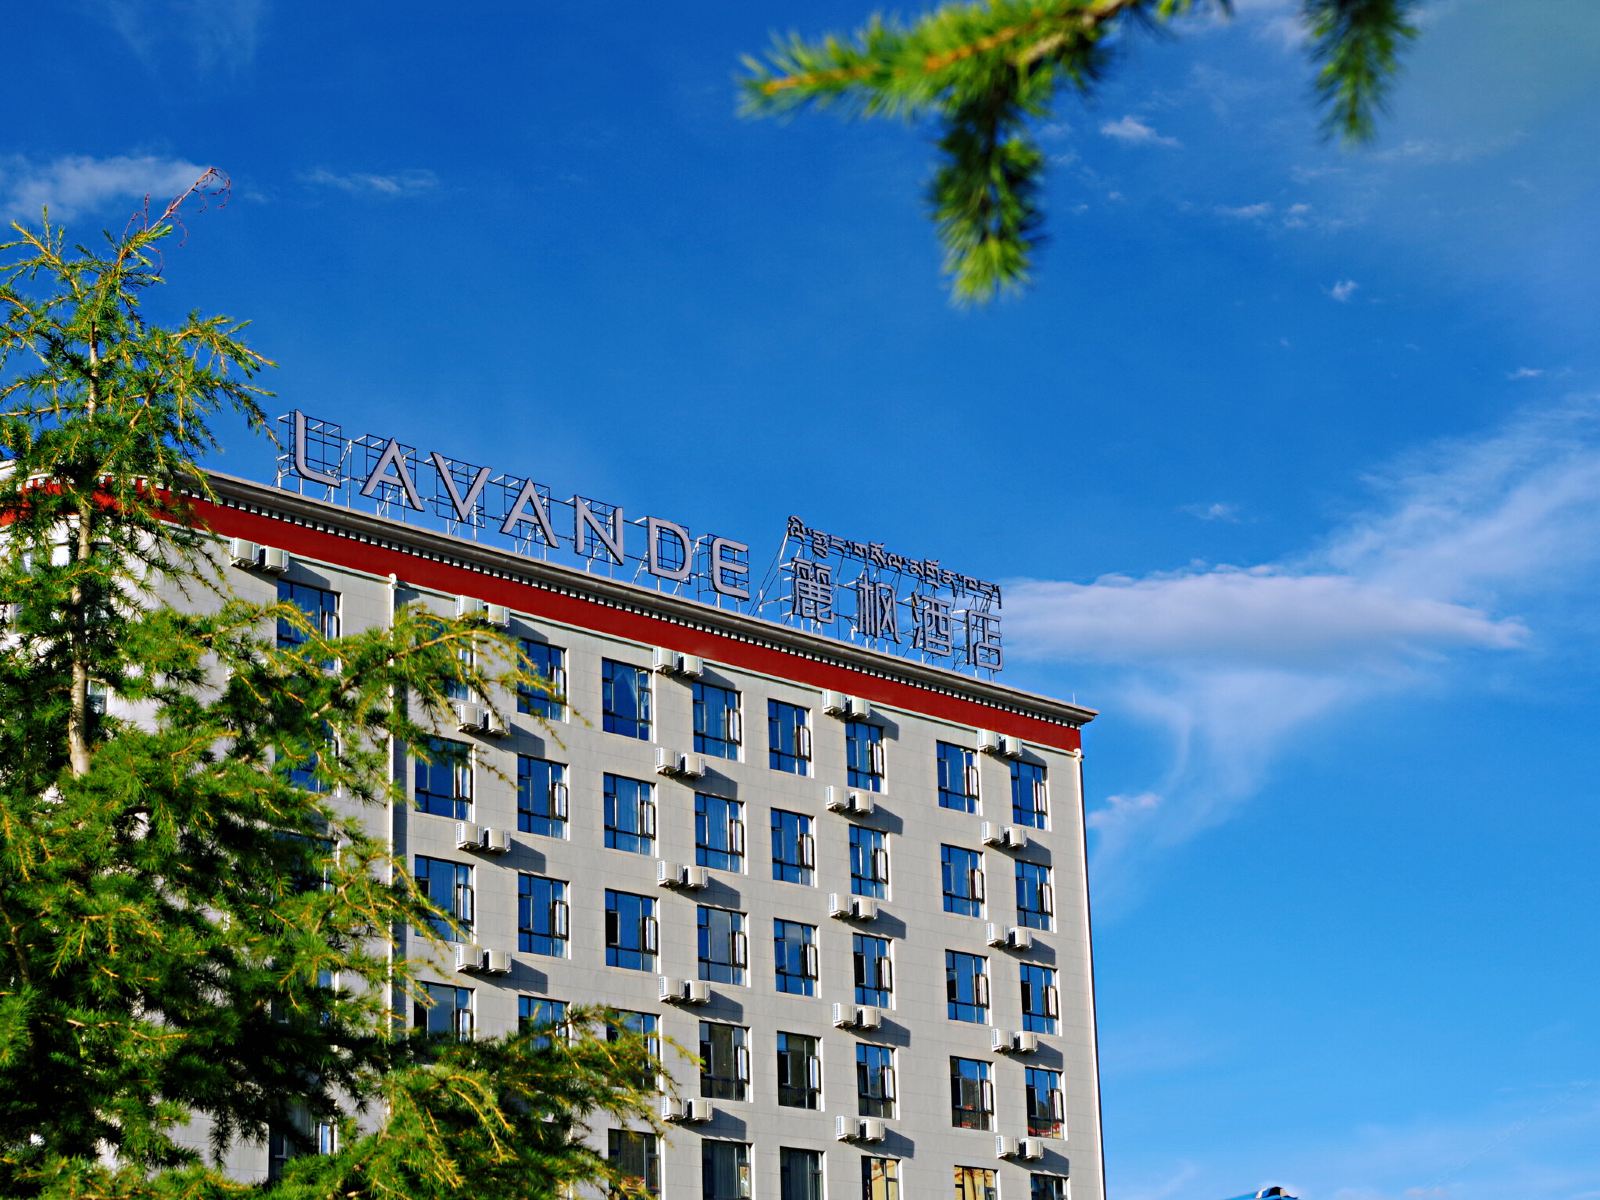 麗枫酒店(拉萨市政府西藏大学店)